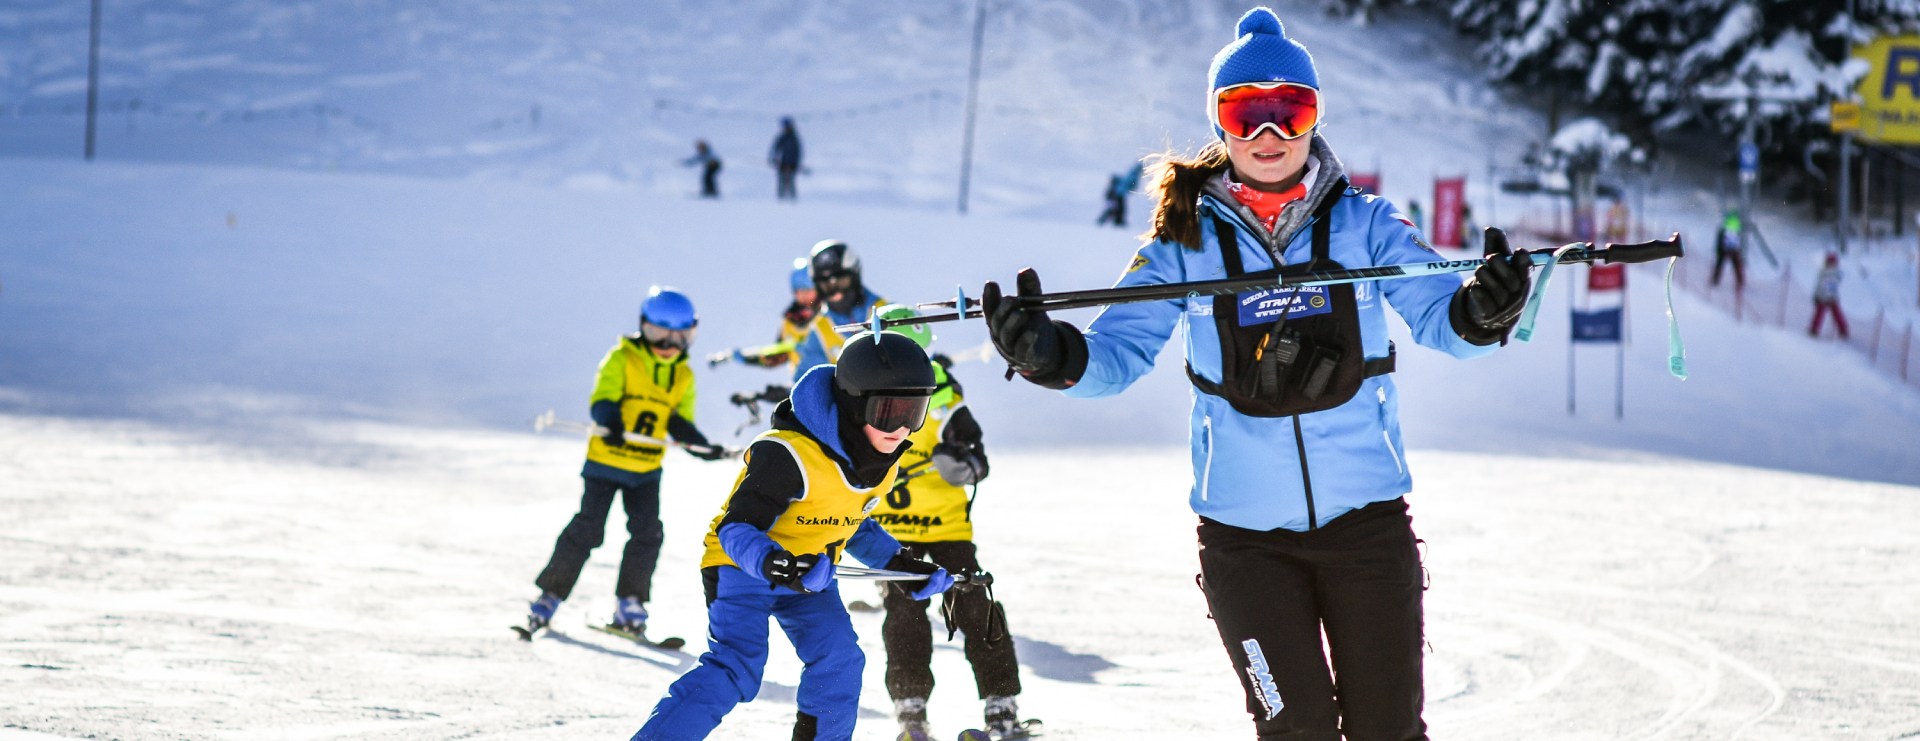 Kursy narciarskie dla dzieci